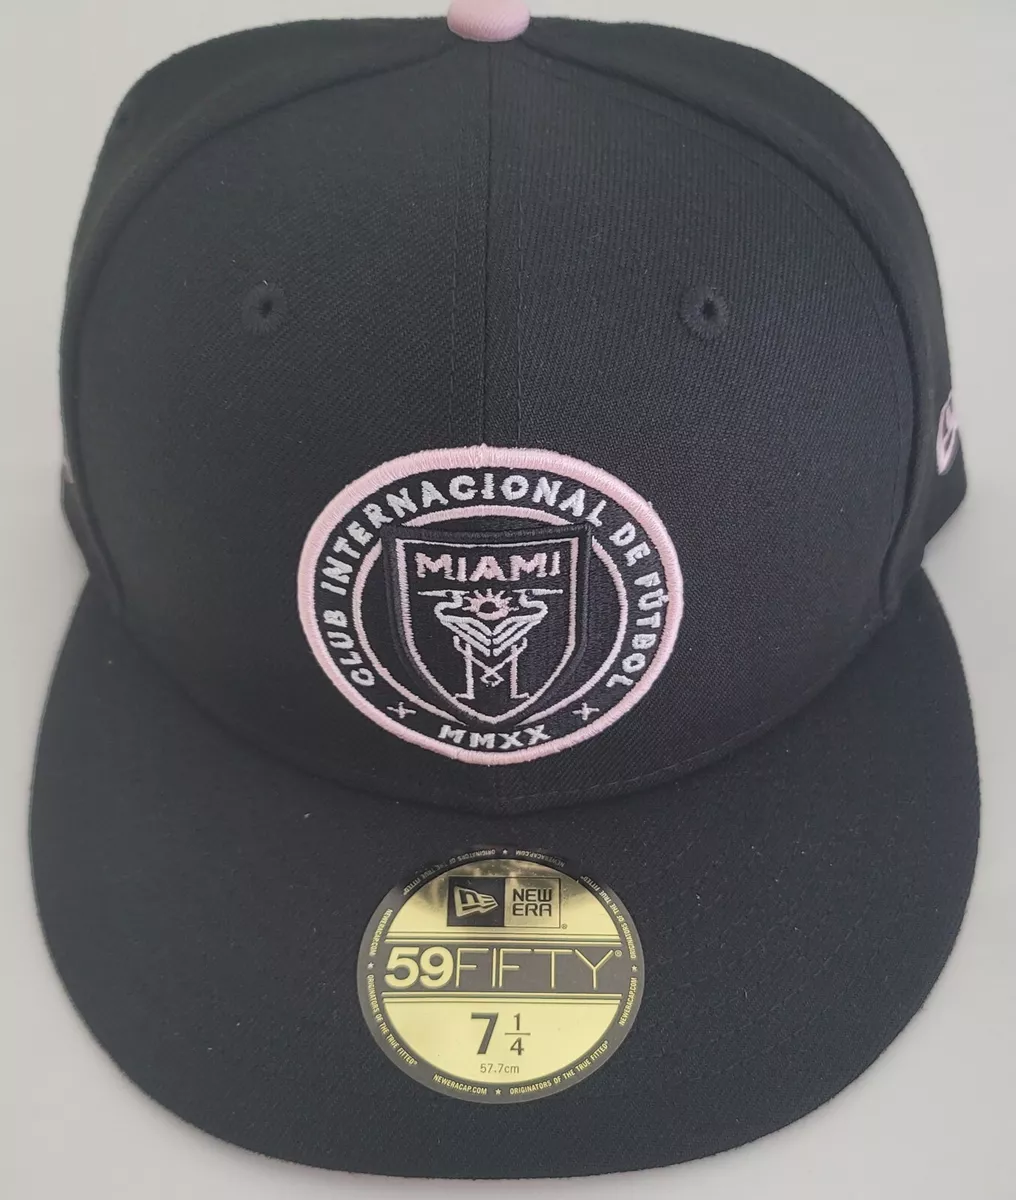 Inter Miami Pink 9FIFTY Snapback – New Era Cap